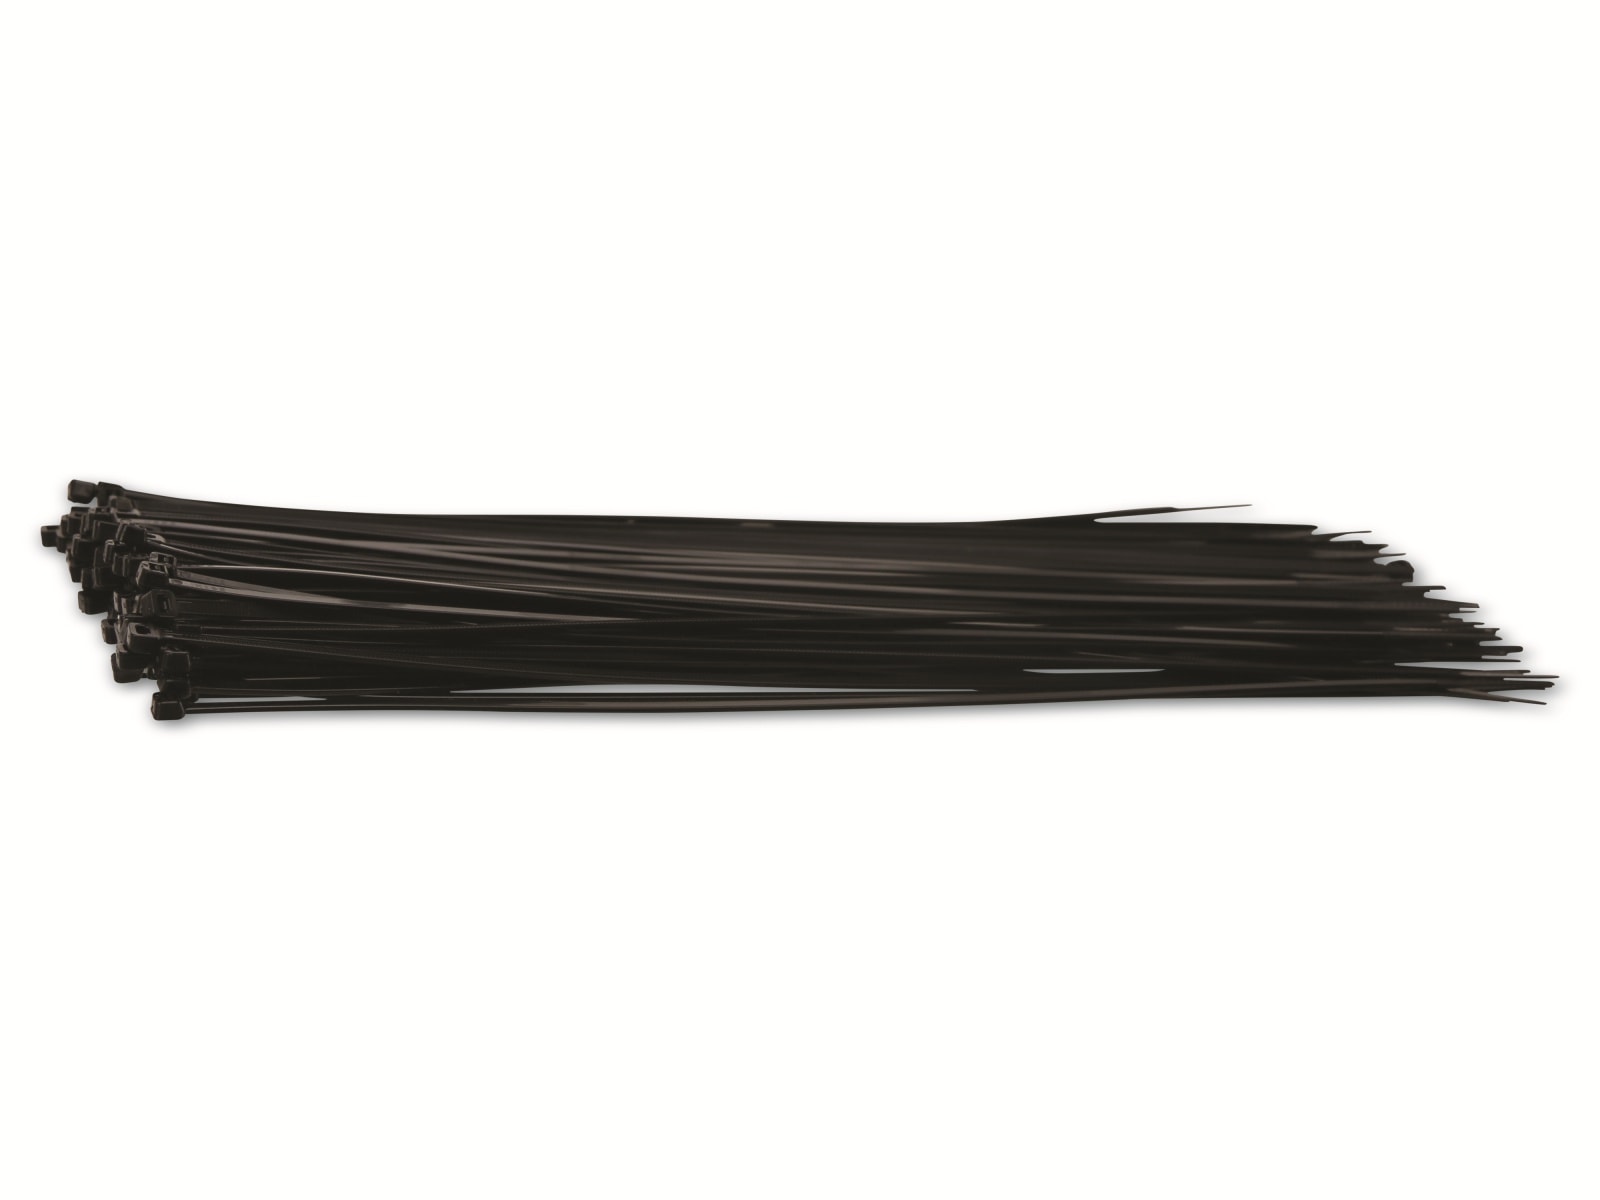 KSS Kabelbinder-Sortiment Polyamid 6.6, schwarz, 330x3,6, UV-beständig, 100 Stück